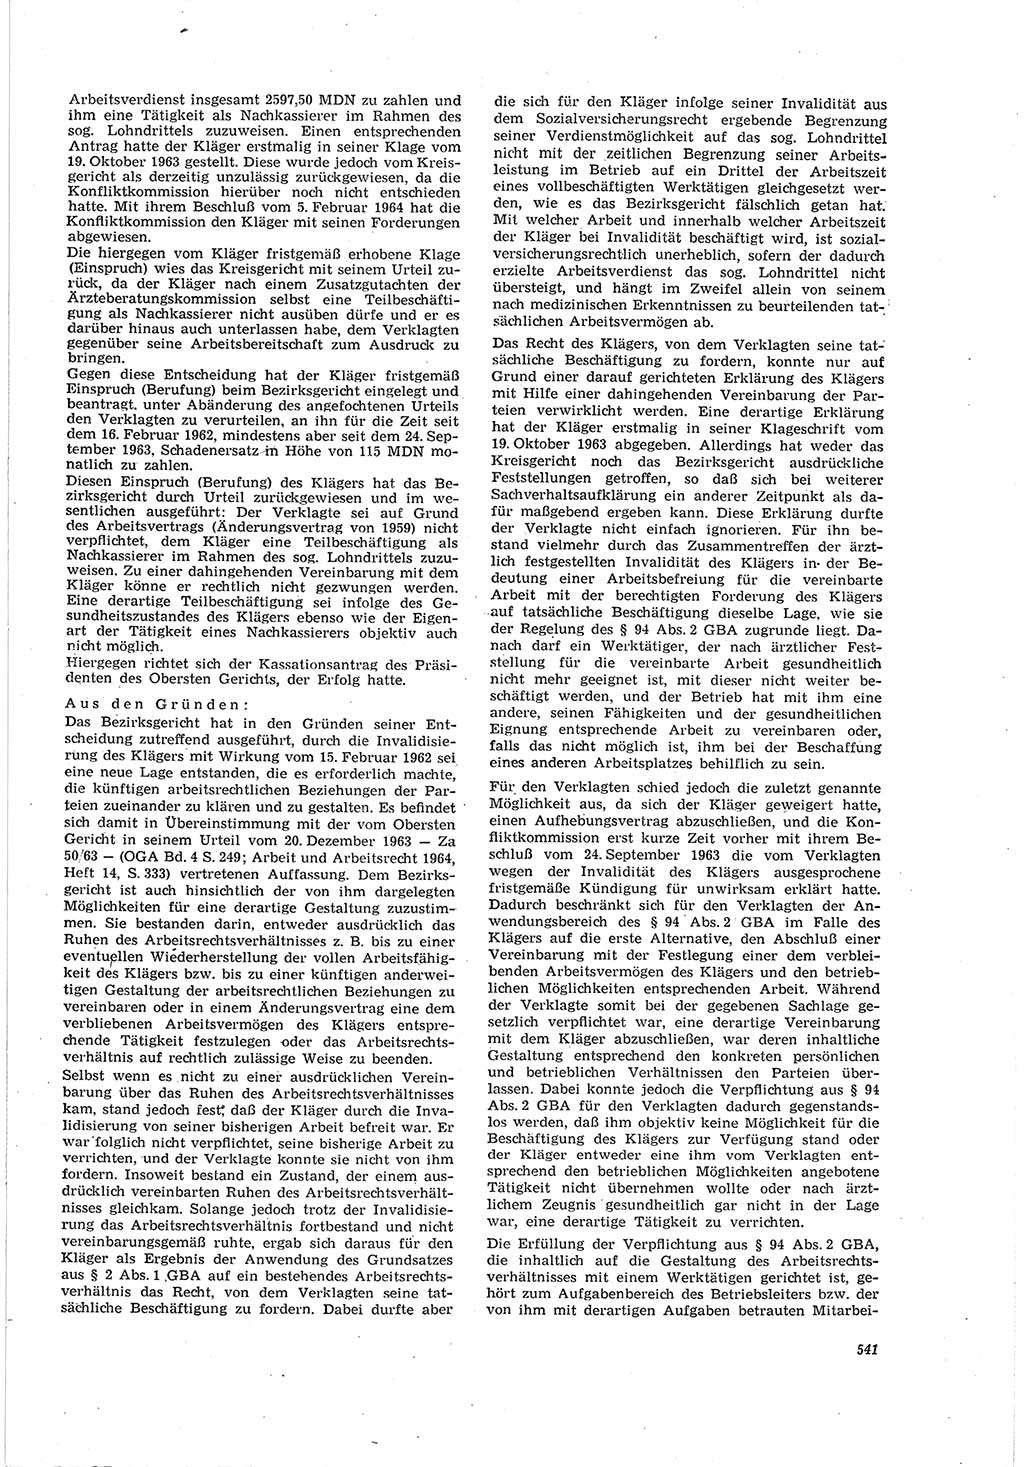 Neue Justiz (NJ), Zeitschrift für Recht und Rechtswissenschaft [Deutsche Demokratische Republik (DDR)], 20. Jahrgang 1966, Seite 541 (NJ DDR 1966, S. 541)